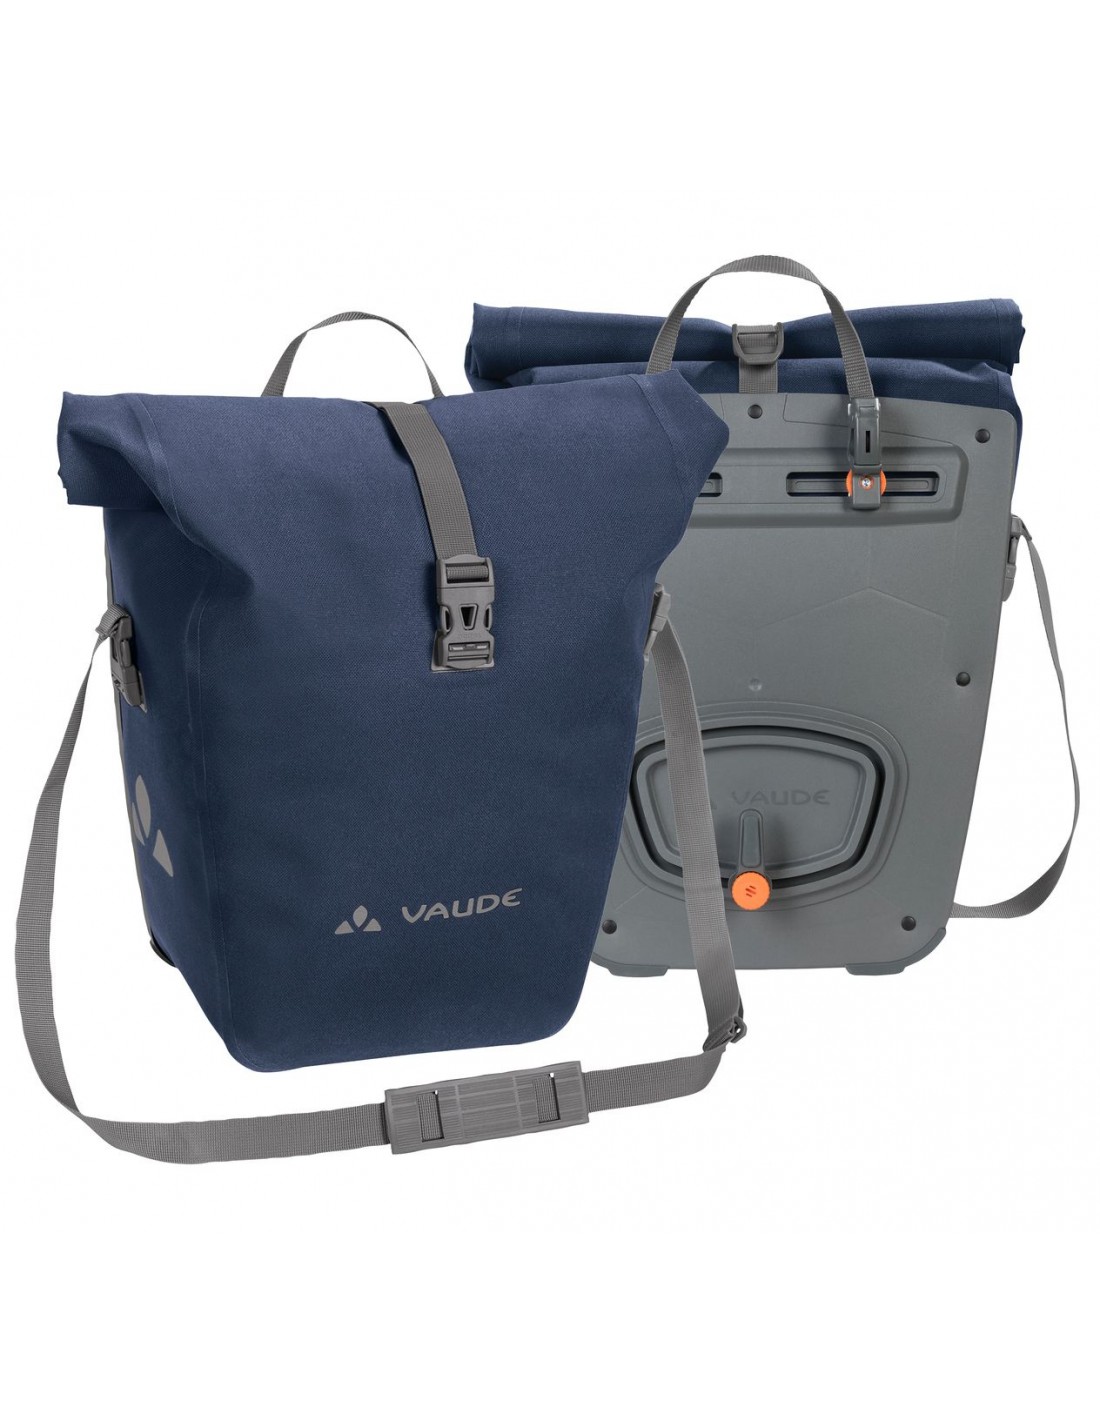 Vaude Aqua Back Deluxe - Fahrradtaschen, marine Taschenvariante - Gepäckträgertaschen, von Vaude